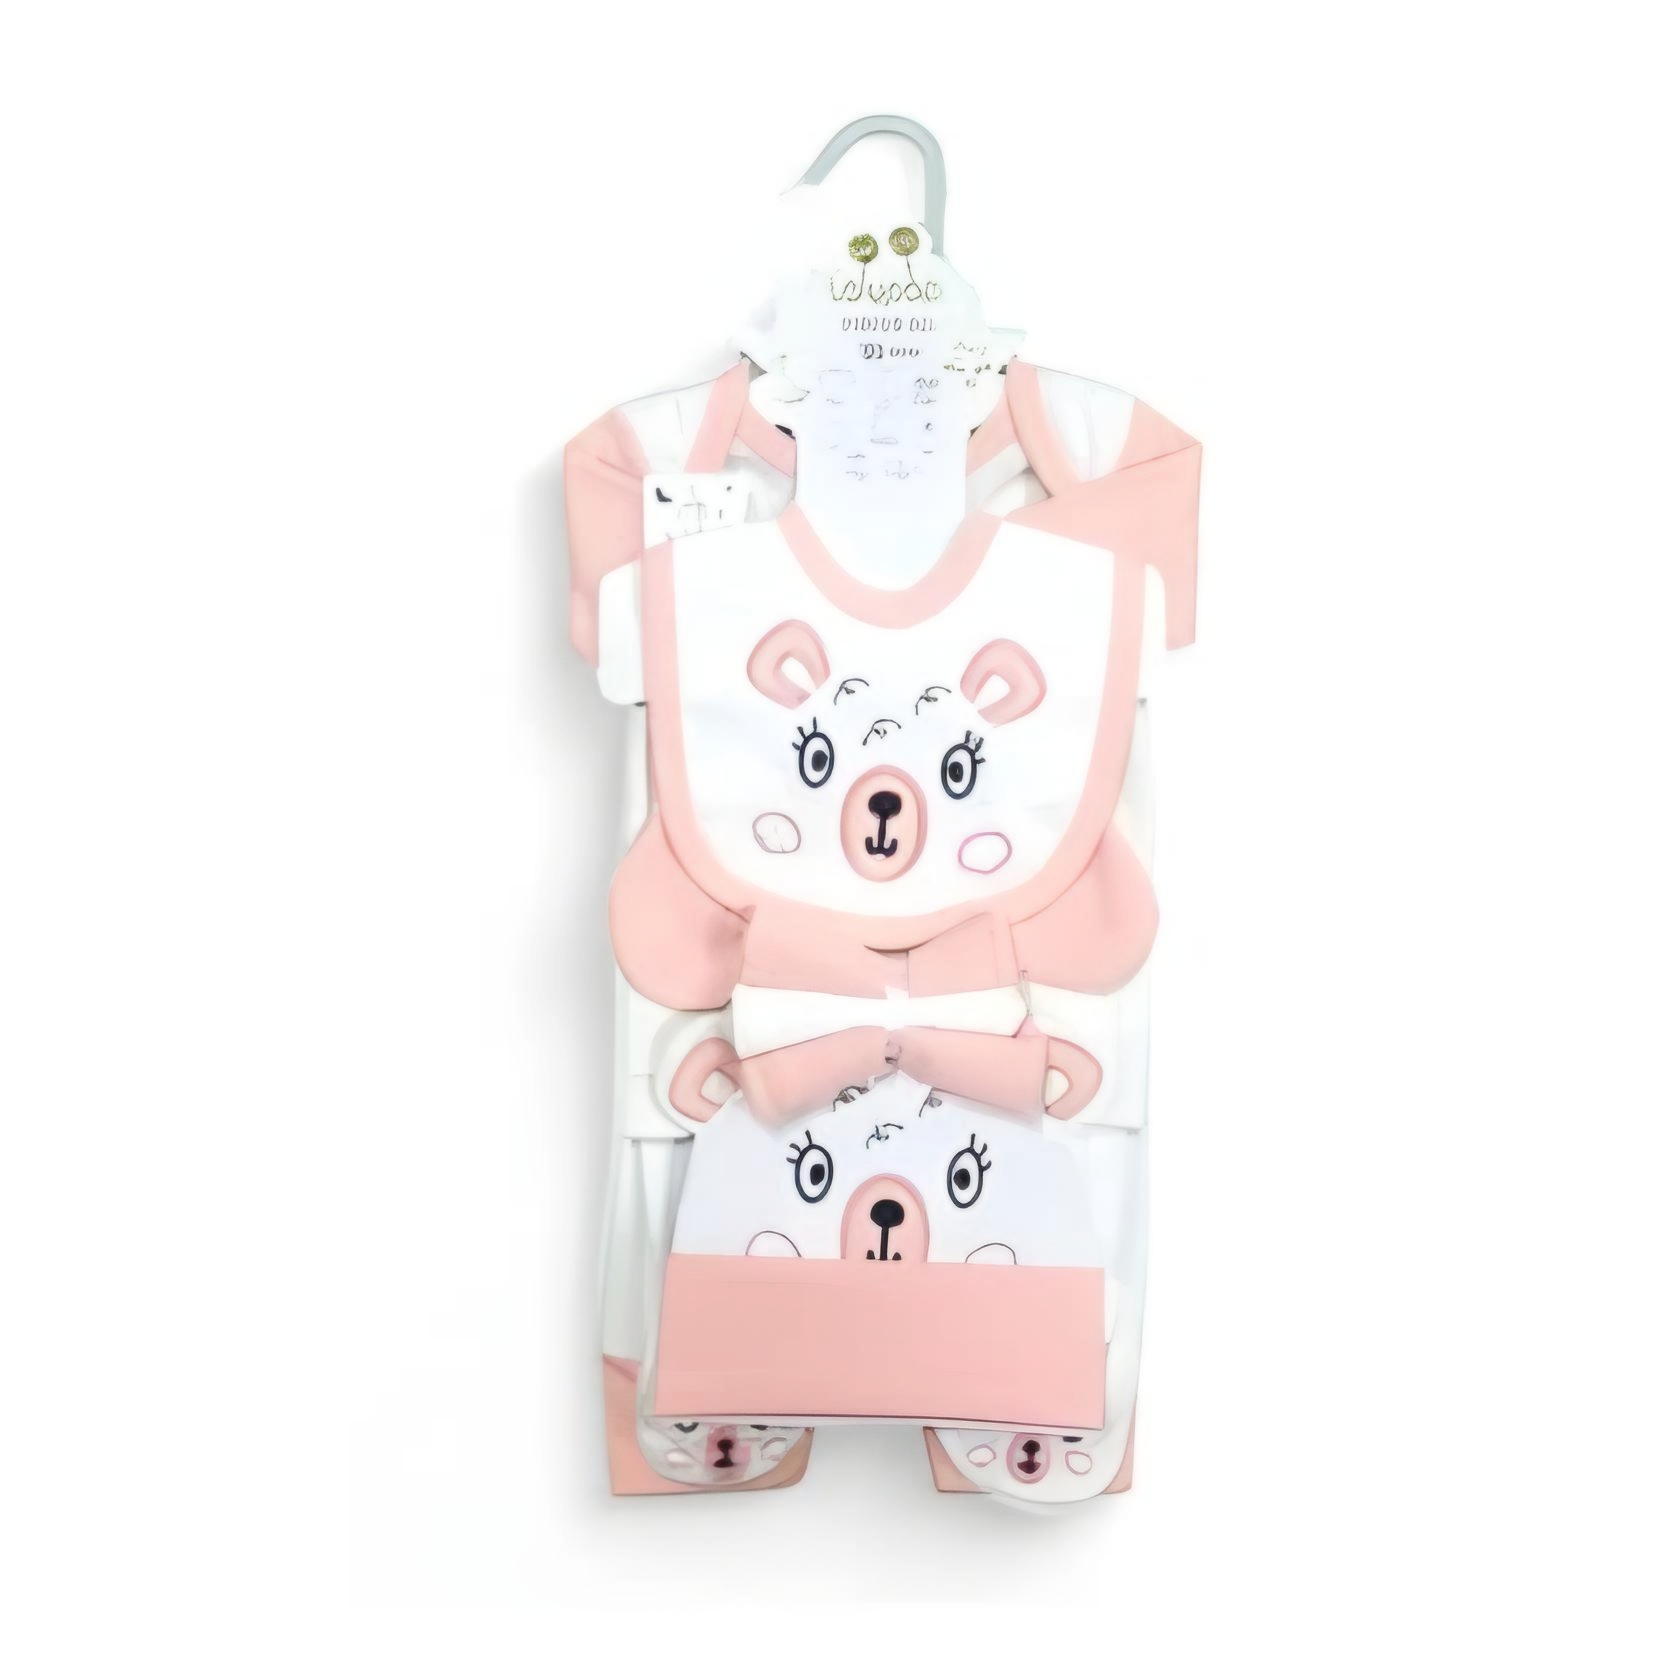 10Pcs Baby Gift Set White & Light Pink Bear